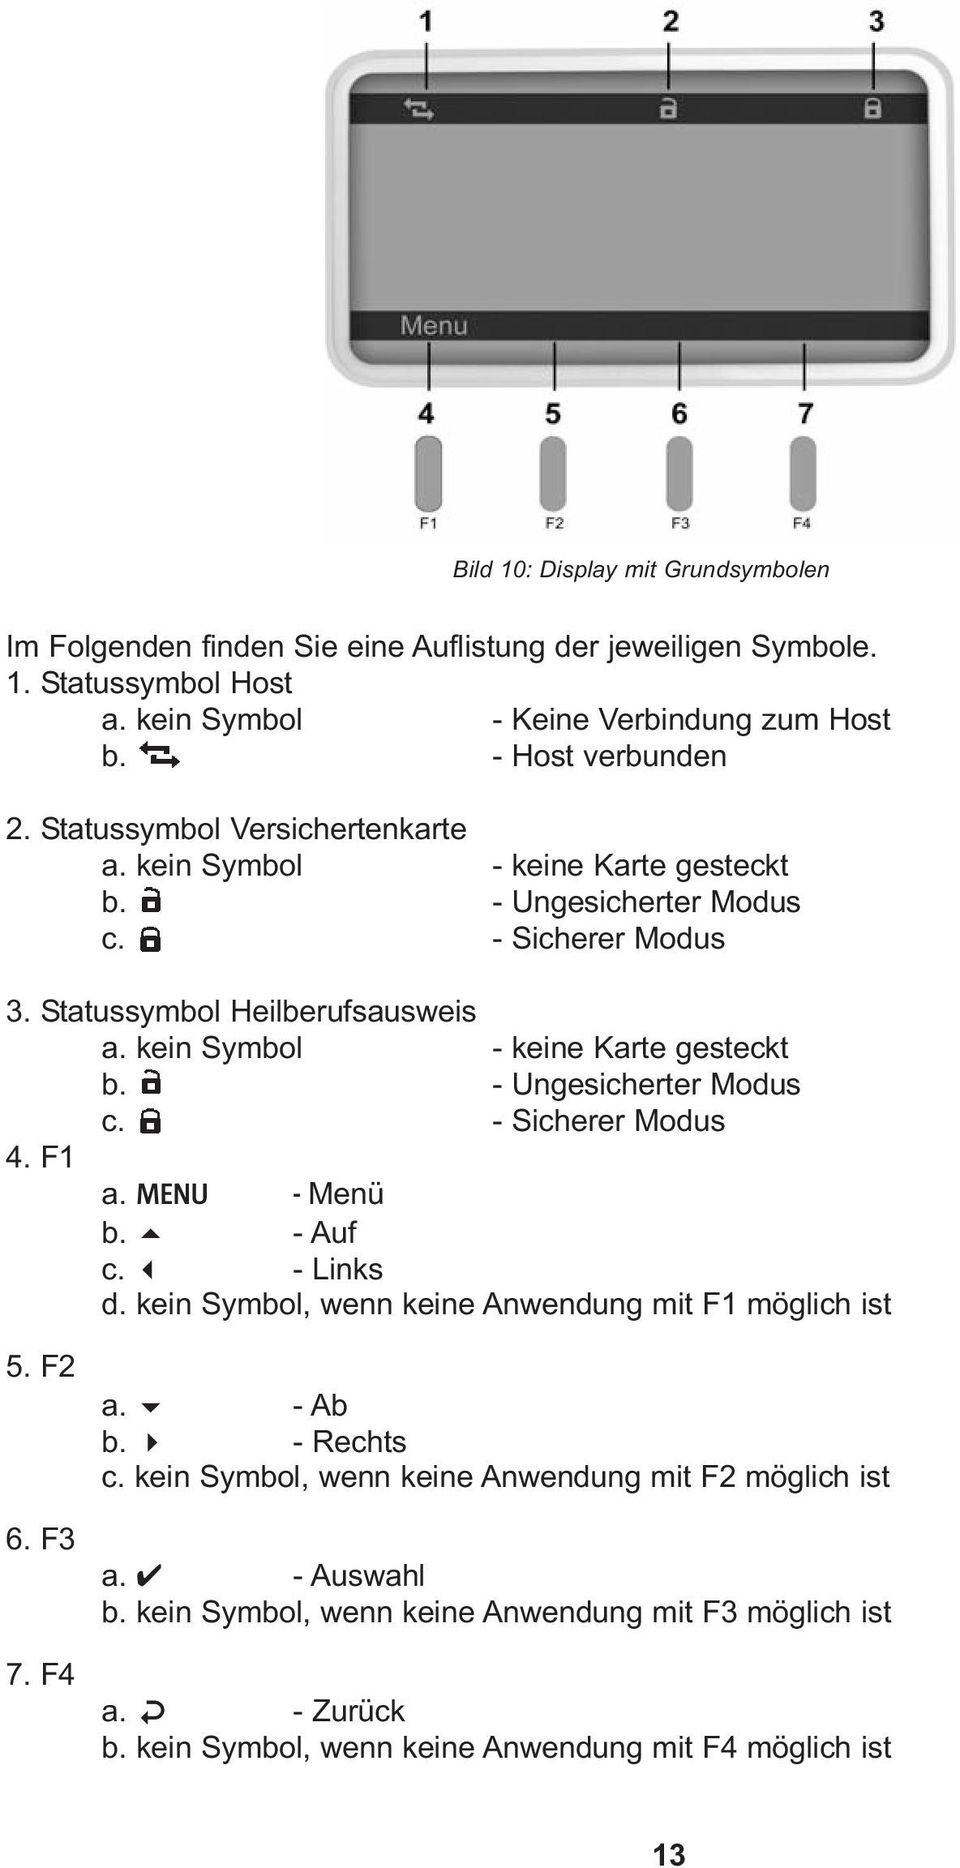 F1 a. MENU - Menü b. 5 - Auf c. 3 - Links d. kein Symbol, wenn keine Anwendung mit F1 möglich ist 5. F2 6. F3 7. F4 a. 6 - Ab b. 4 - Rechts c.